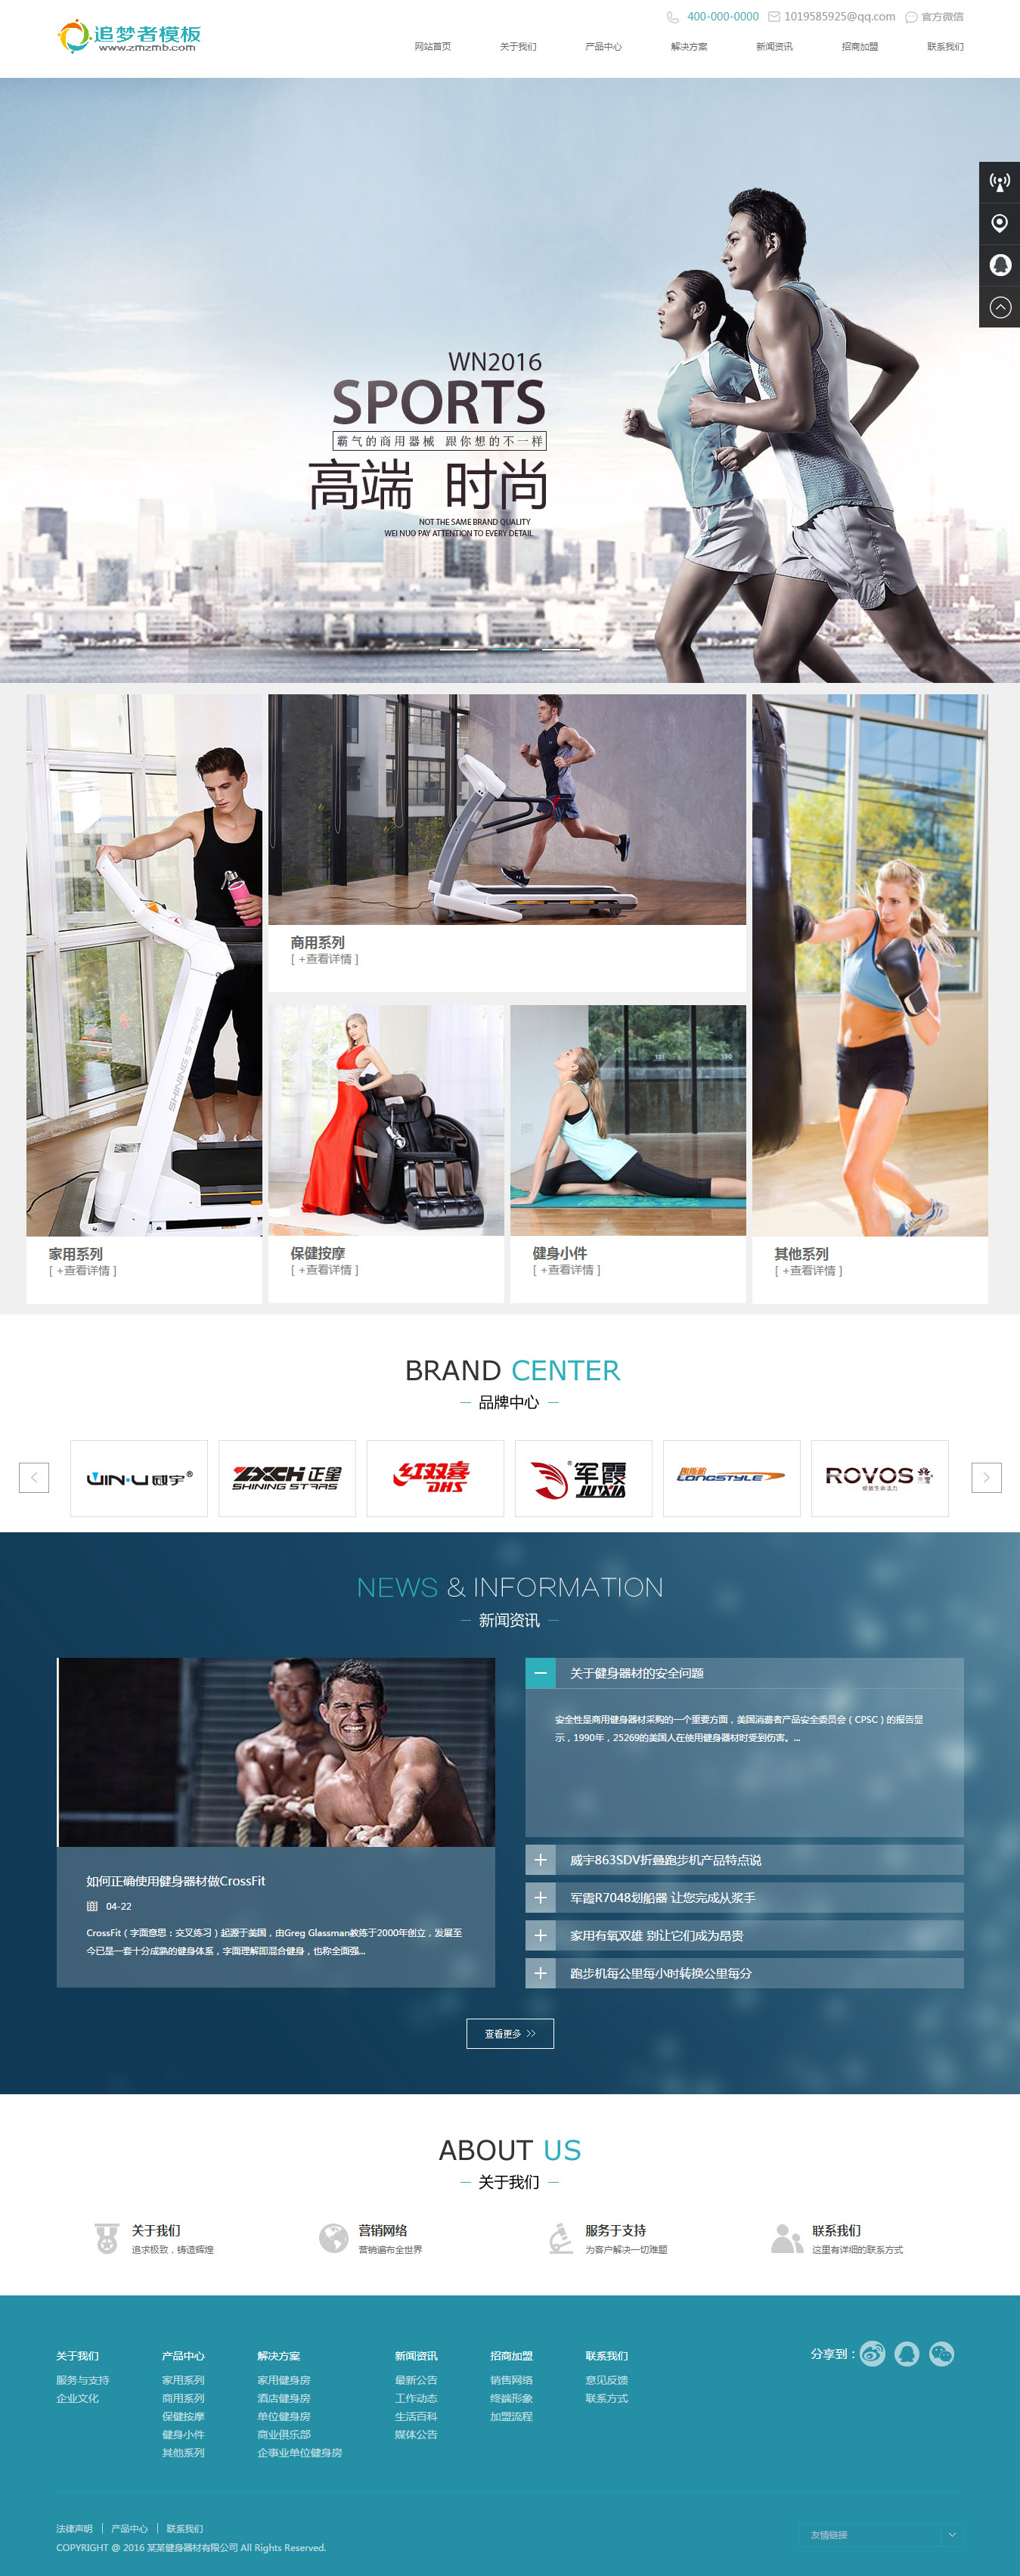 织梦cms健身器材电子产品展示公司企业模板